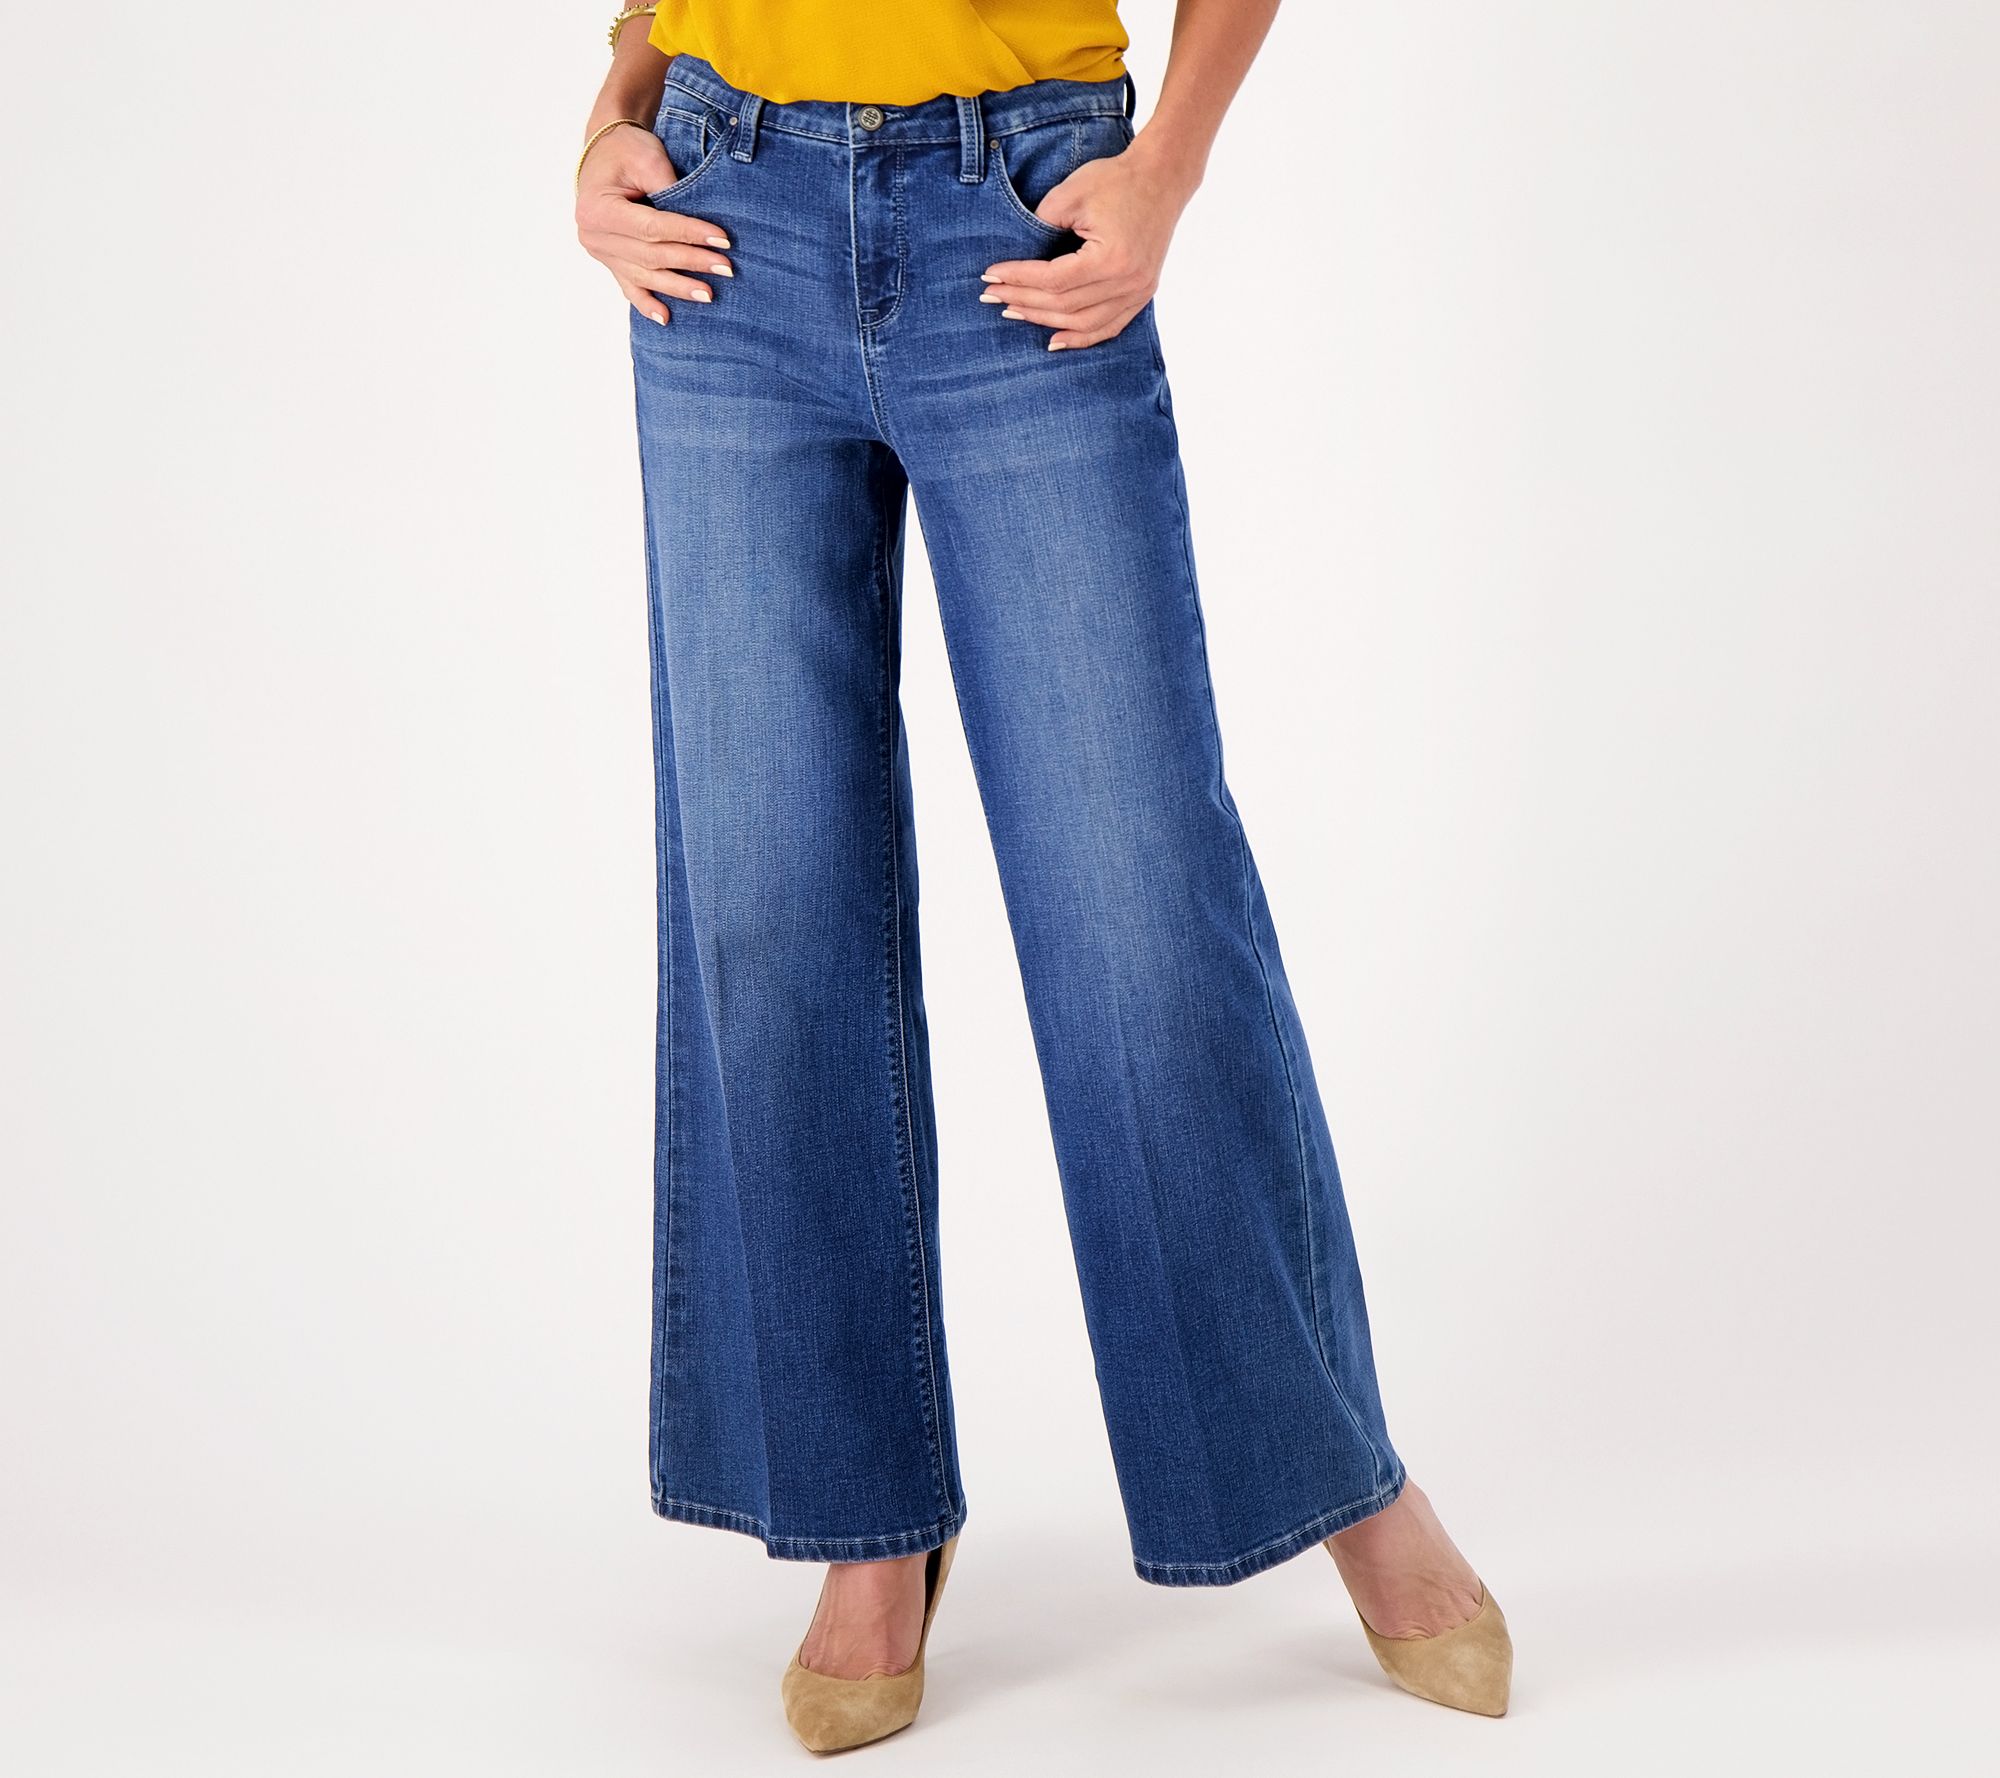 Laurie Felt Petite Daisy Denim Full-Length Wide-Leg Jeans 